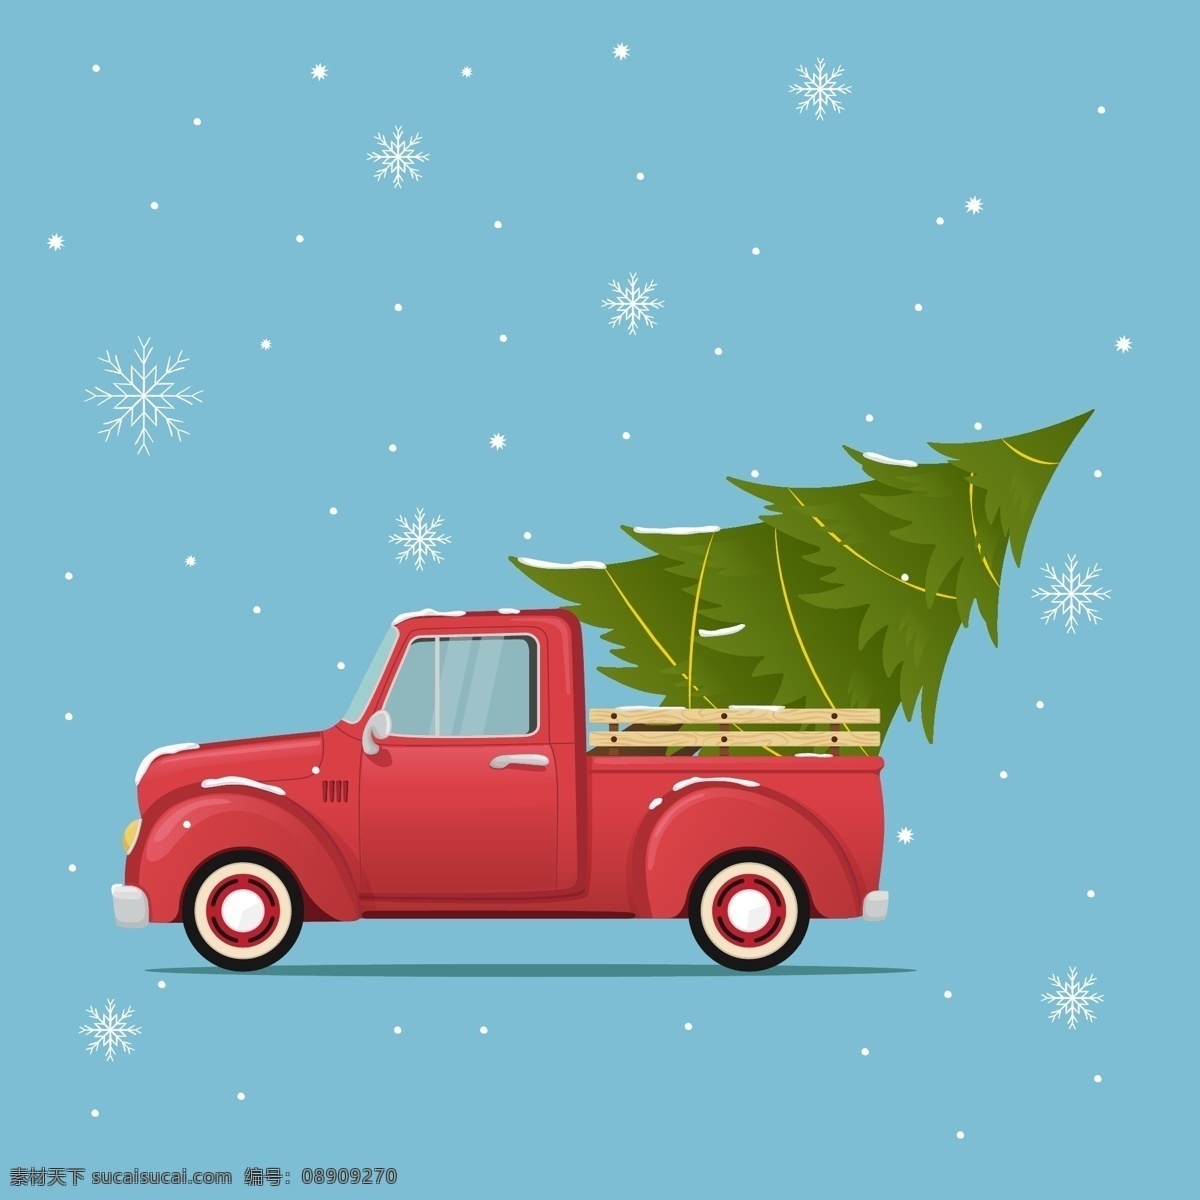 圣诞节汽车 圣诞节元素 圣诞节素材 卡车 皮卡车 圣诞树 运输圣诞树 下雪 圣诞节背景 红色汽车 卡通汽车 手绘汽车 汽车插画 创意圣诞树 交通工具 现代科技